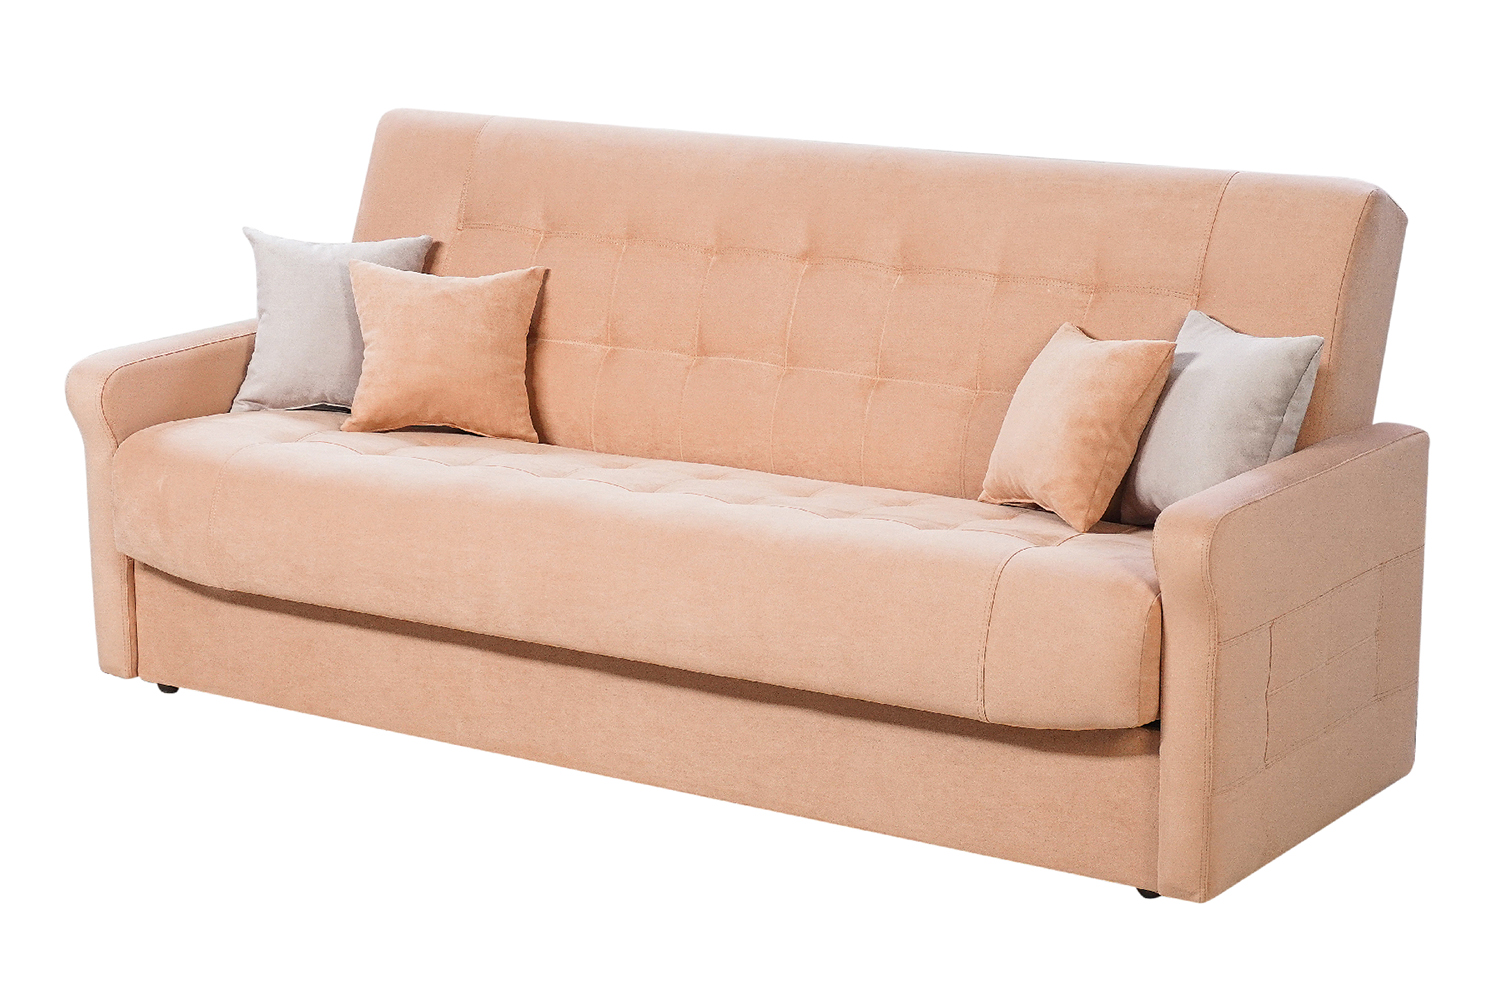 Купить диван-кровать от производителя на сайте меб Елене